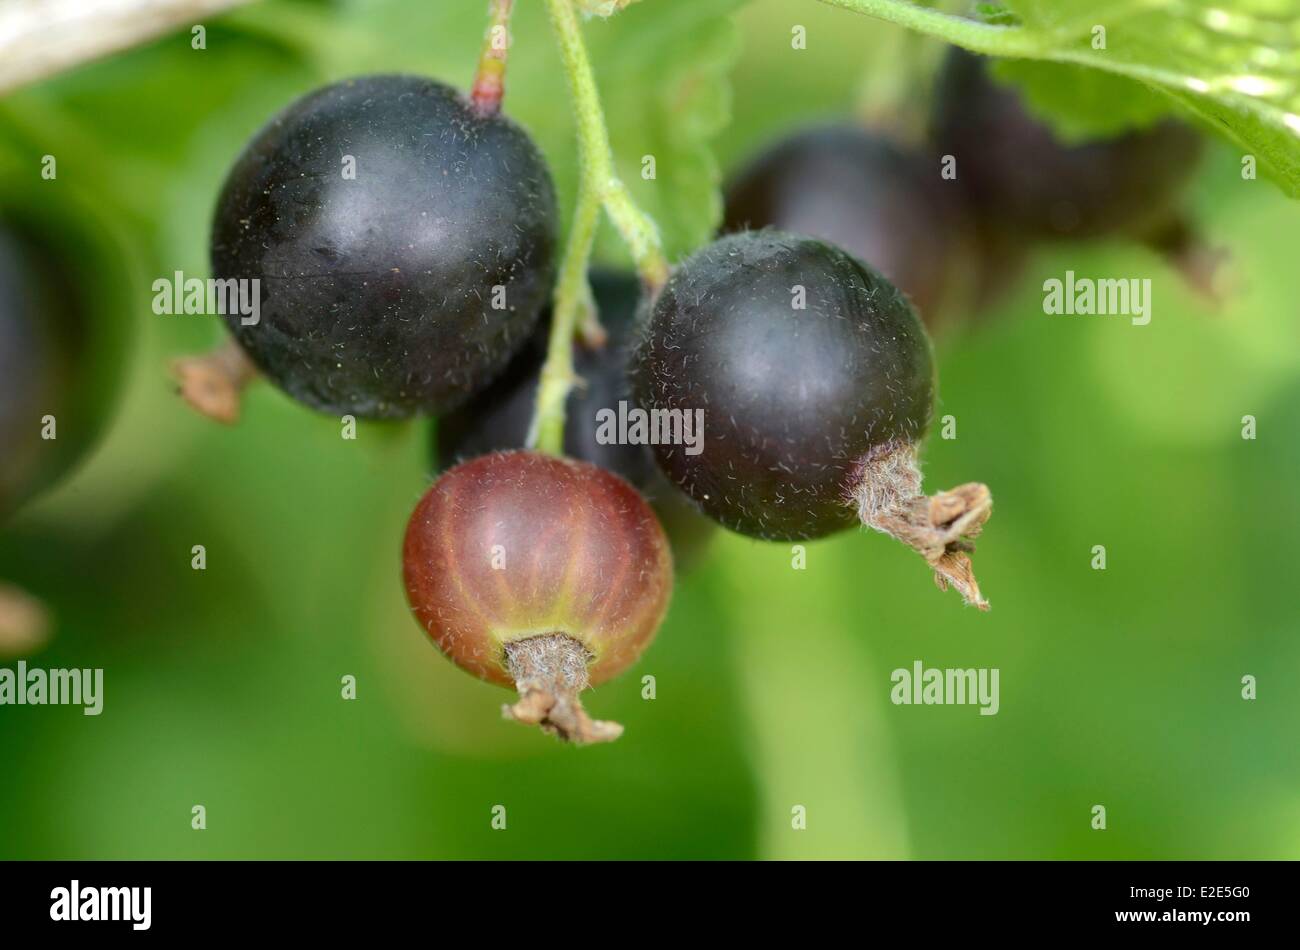 France, Territoire de Belfort, Belfort, garden, caseille (Ribes nigrum Ribes divaricatum) fruit Stock Photo